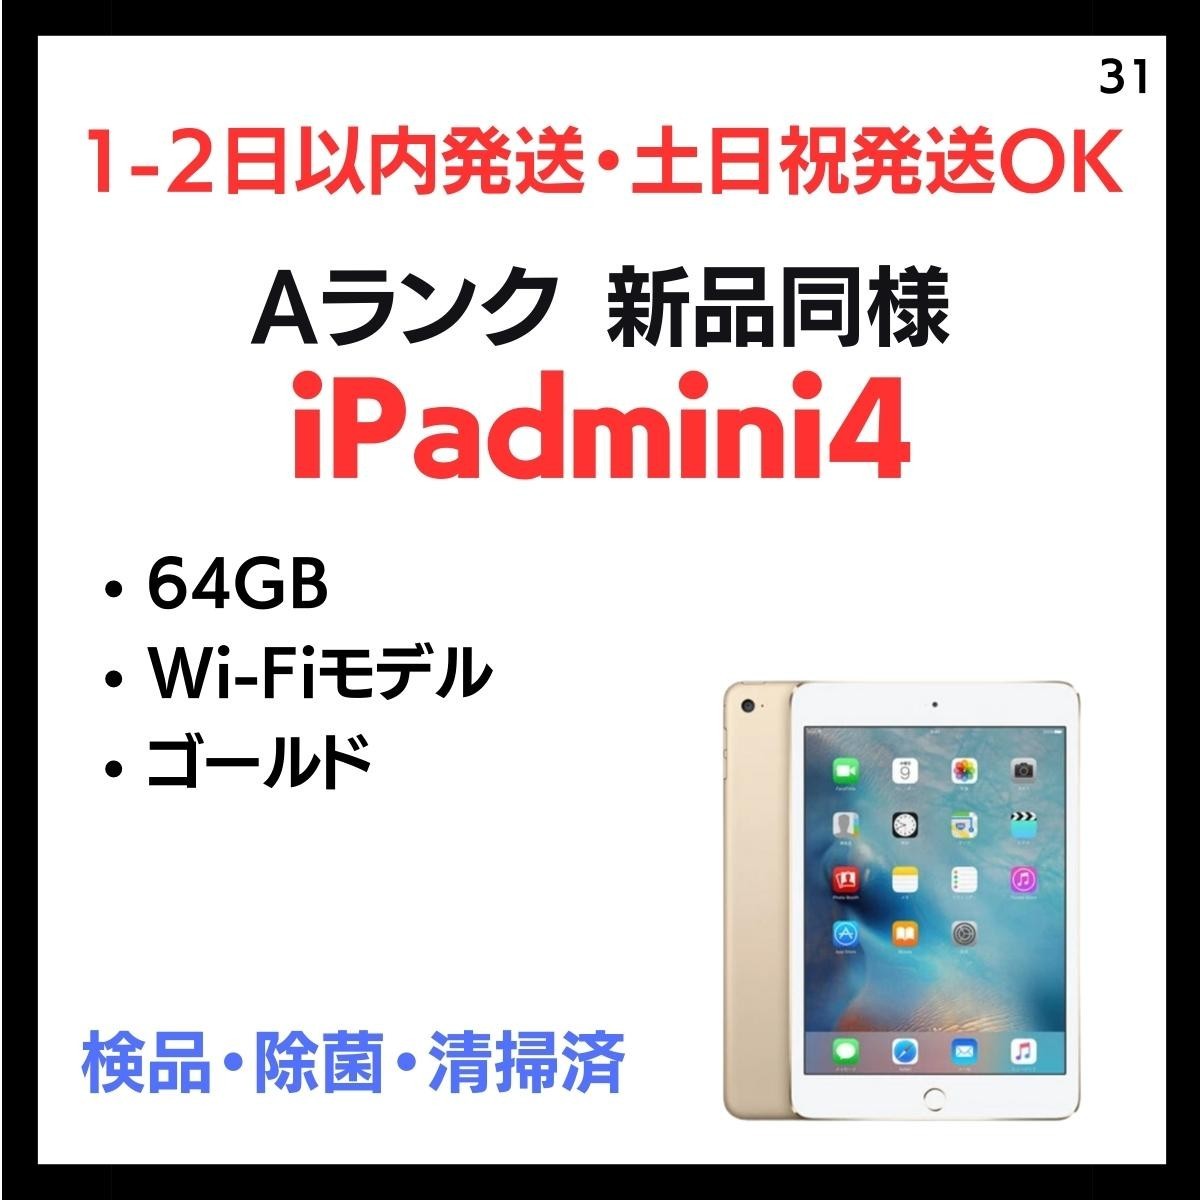 優れた品質 #31 白ロム 本体 端末 ゴールド 64GB Wi-Fi 4 mini iPad 送料無料 安心保証 新品同様 iPad本体